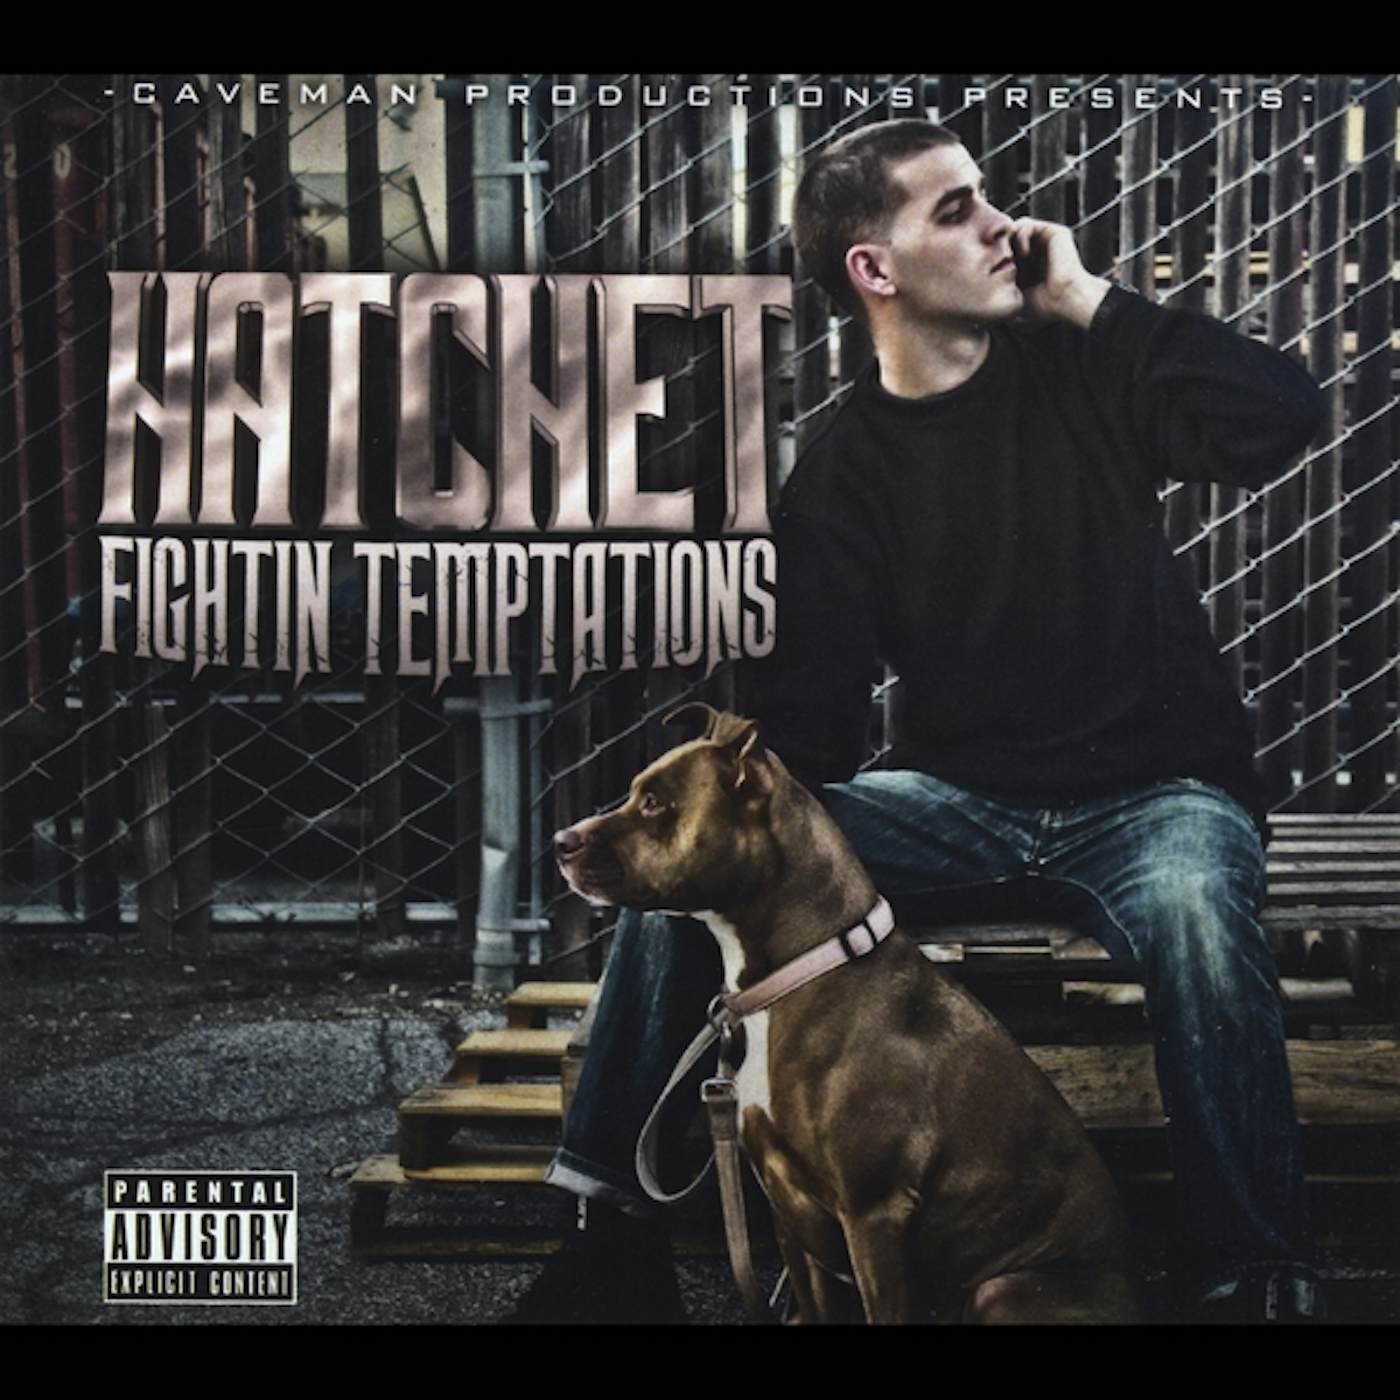 Hatchet FIGHTIN TEMPTATIONS CD